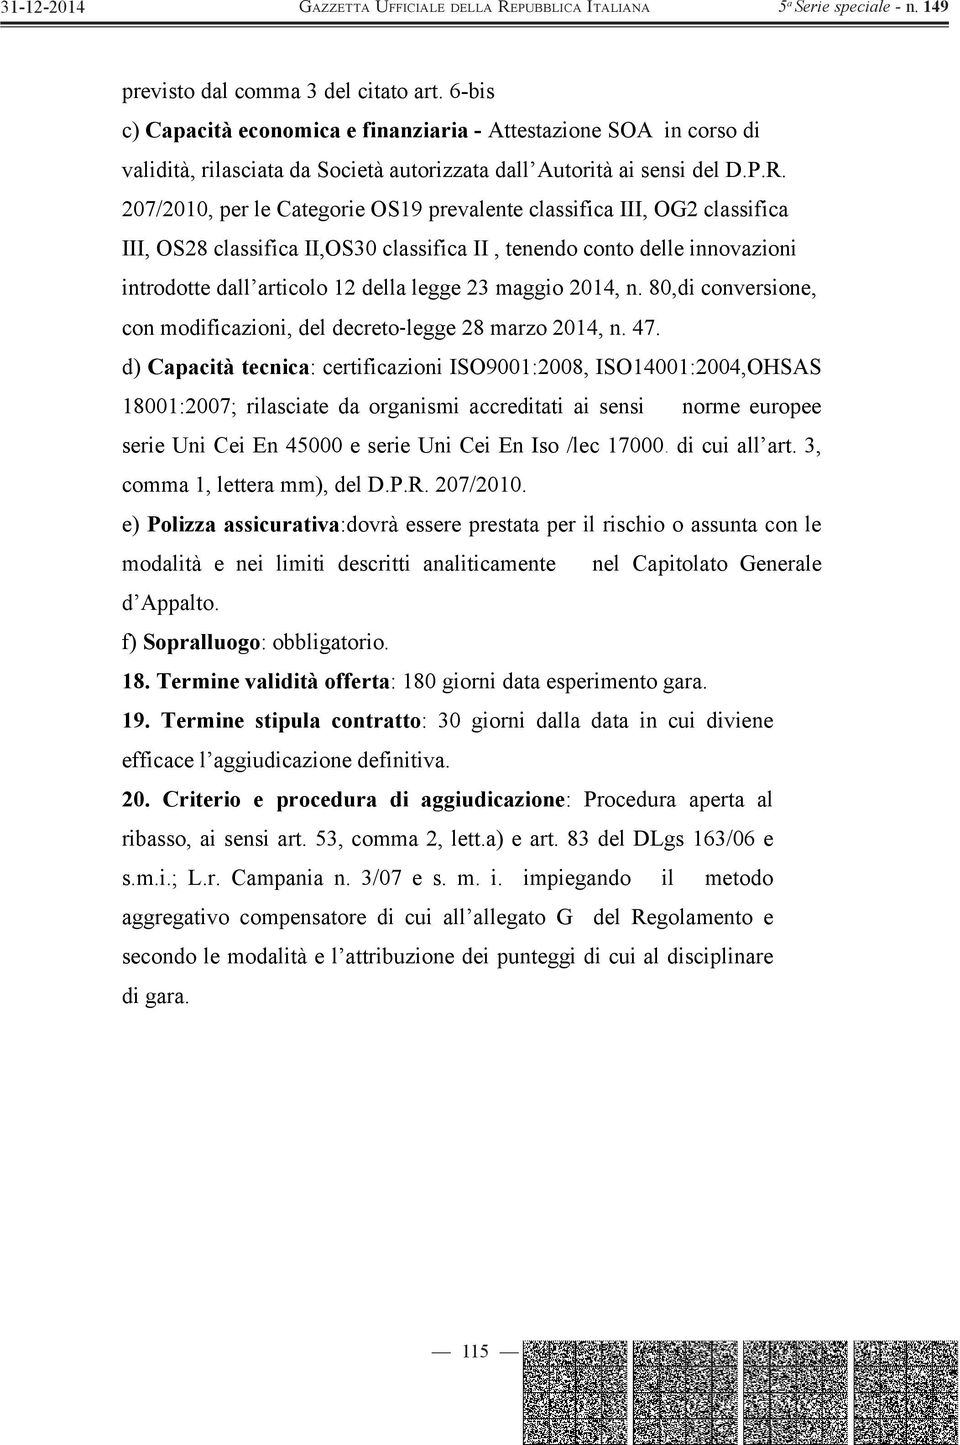 2014, n. 80,di conversione, con modificazioni, del decreto legge 28 marzo 2014, n. 47.